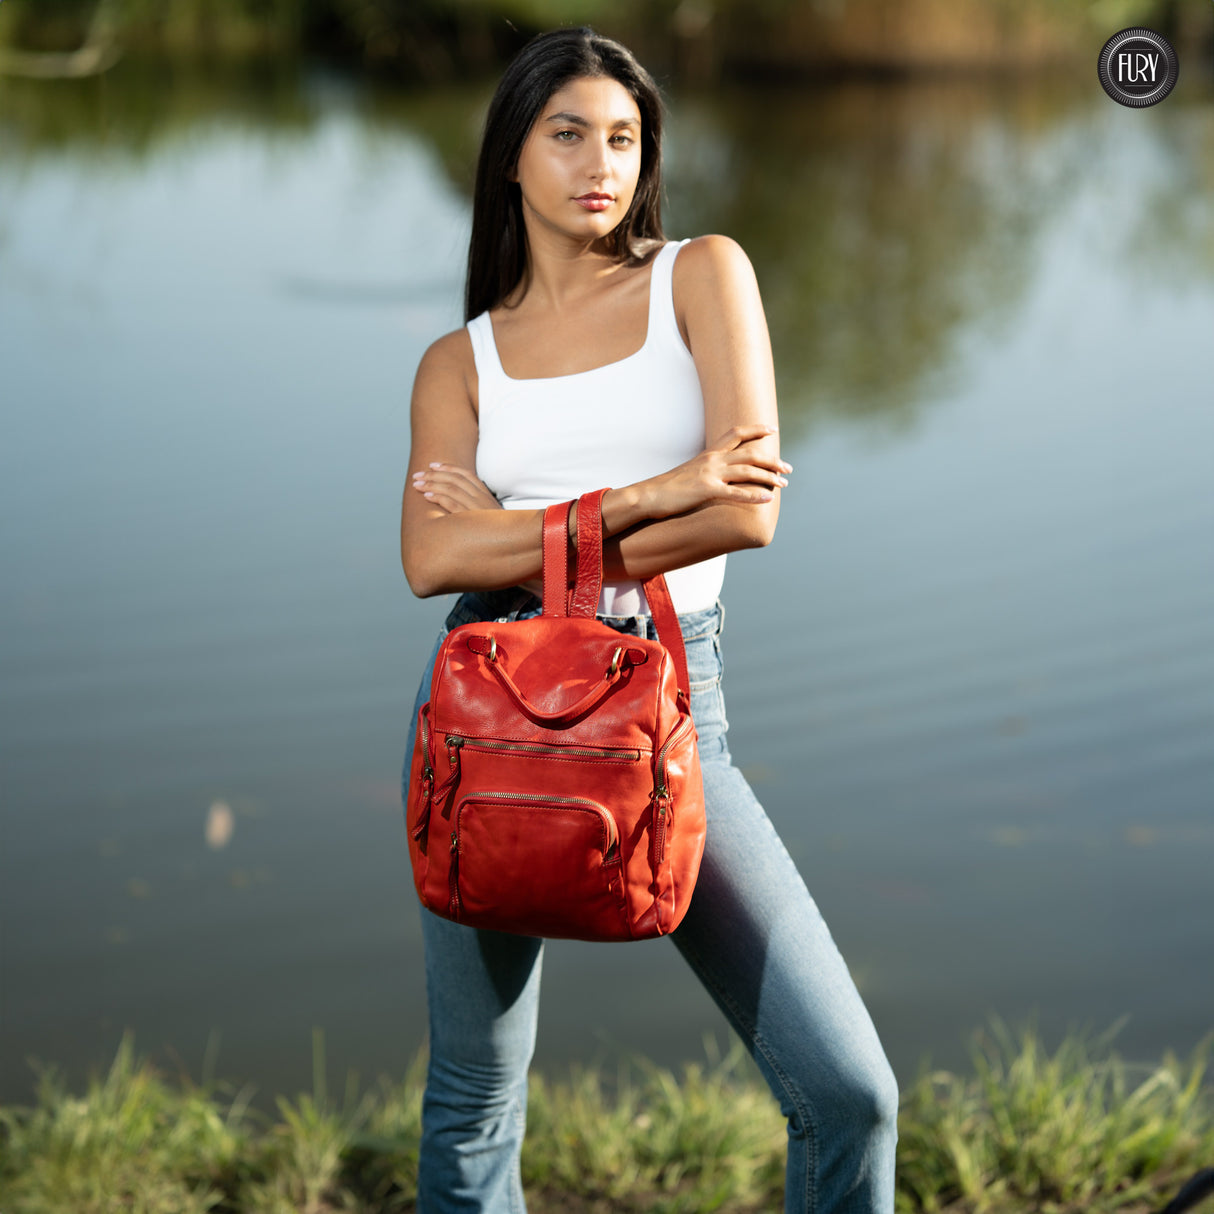 Multi-pocket leather backpack